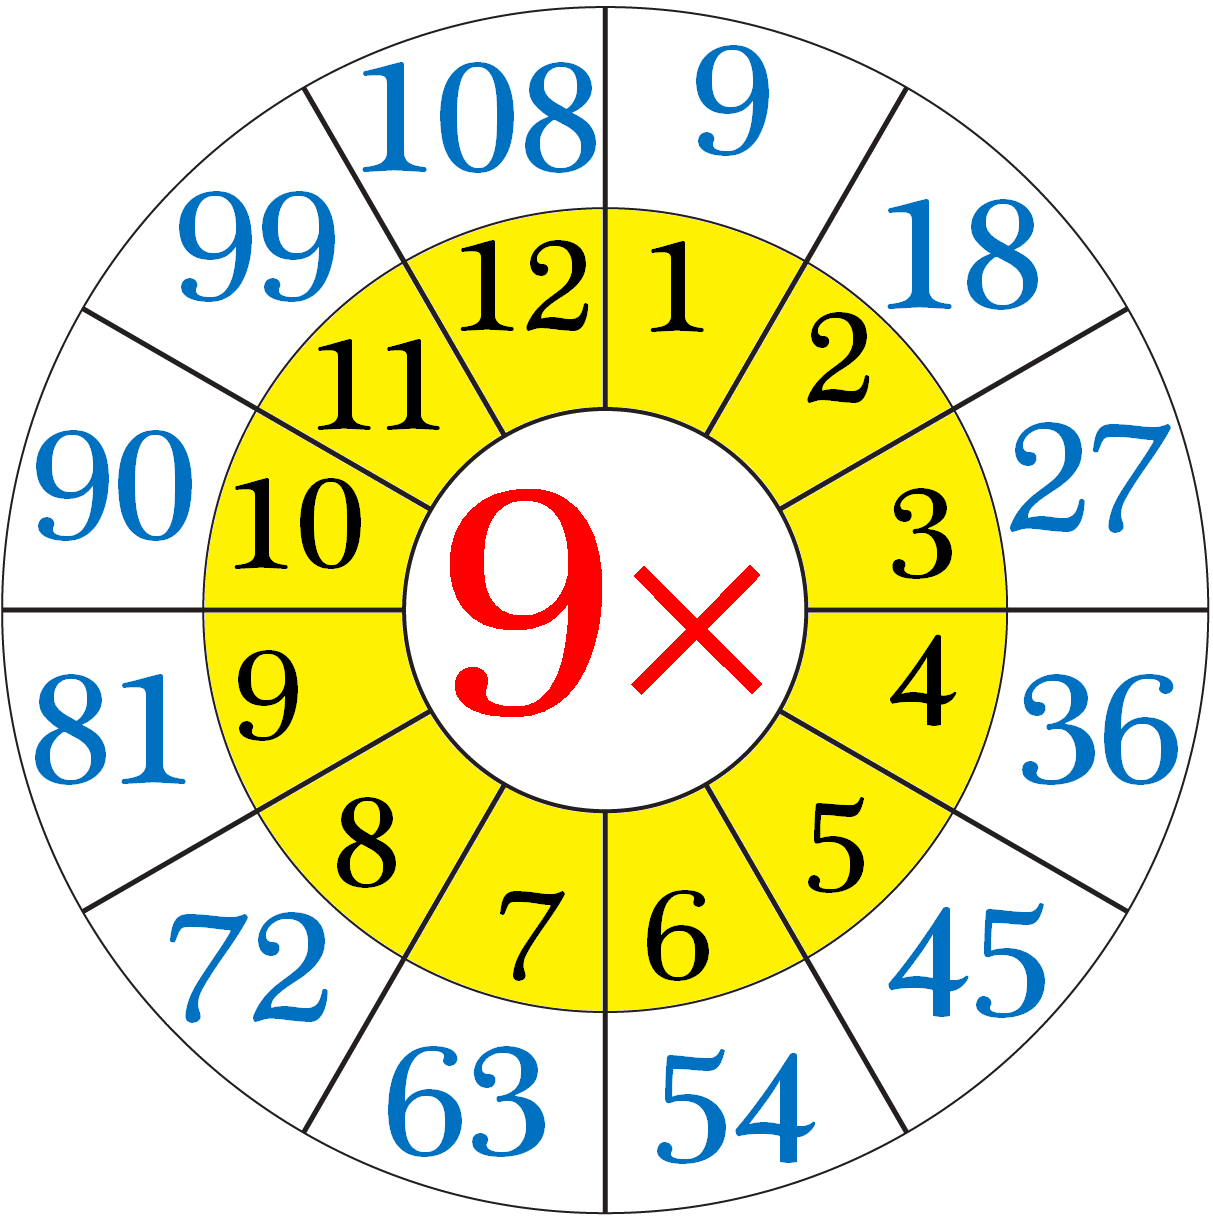 Αποτέλεσμα εικόνας για multiplication table